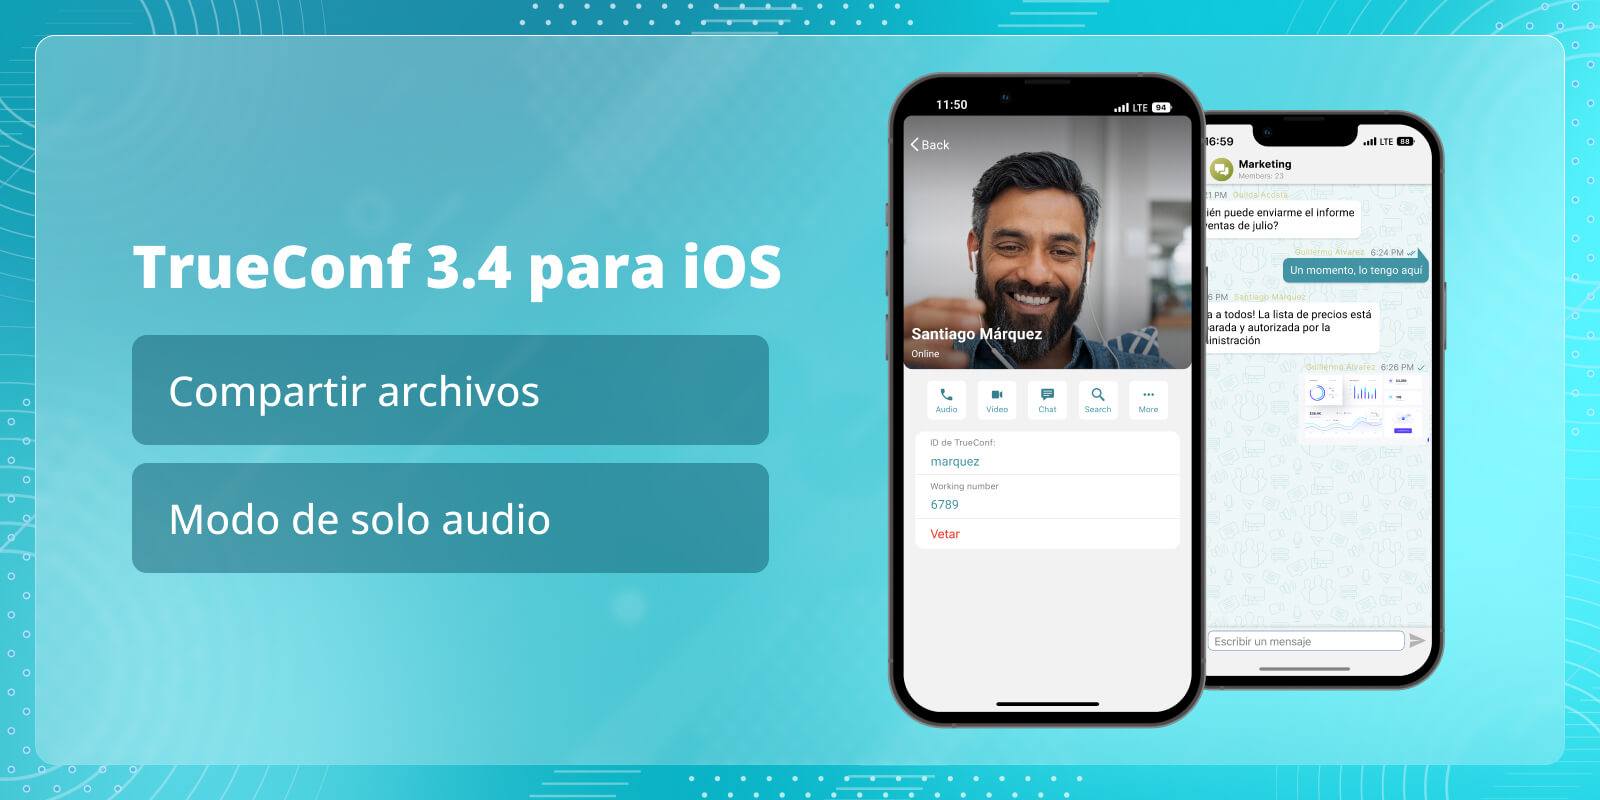 TrueConf 3.4 para iOS: Compartir archivos y modo de solo audio 1